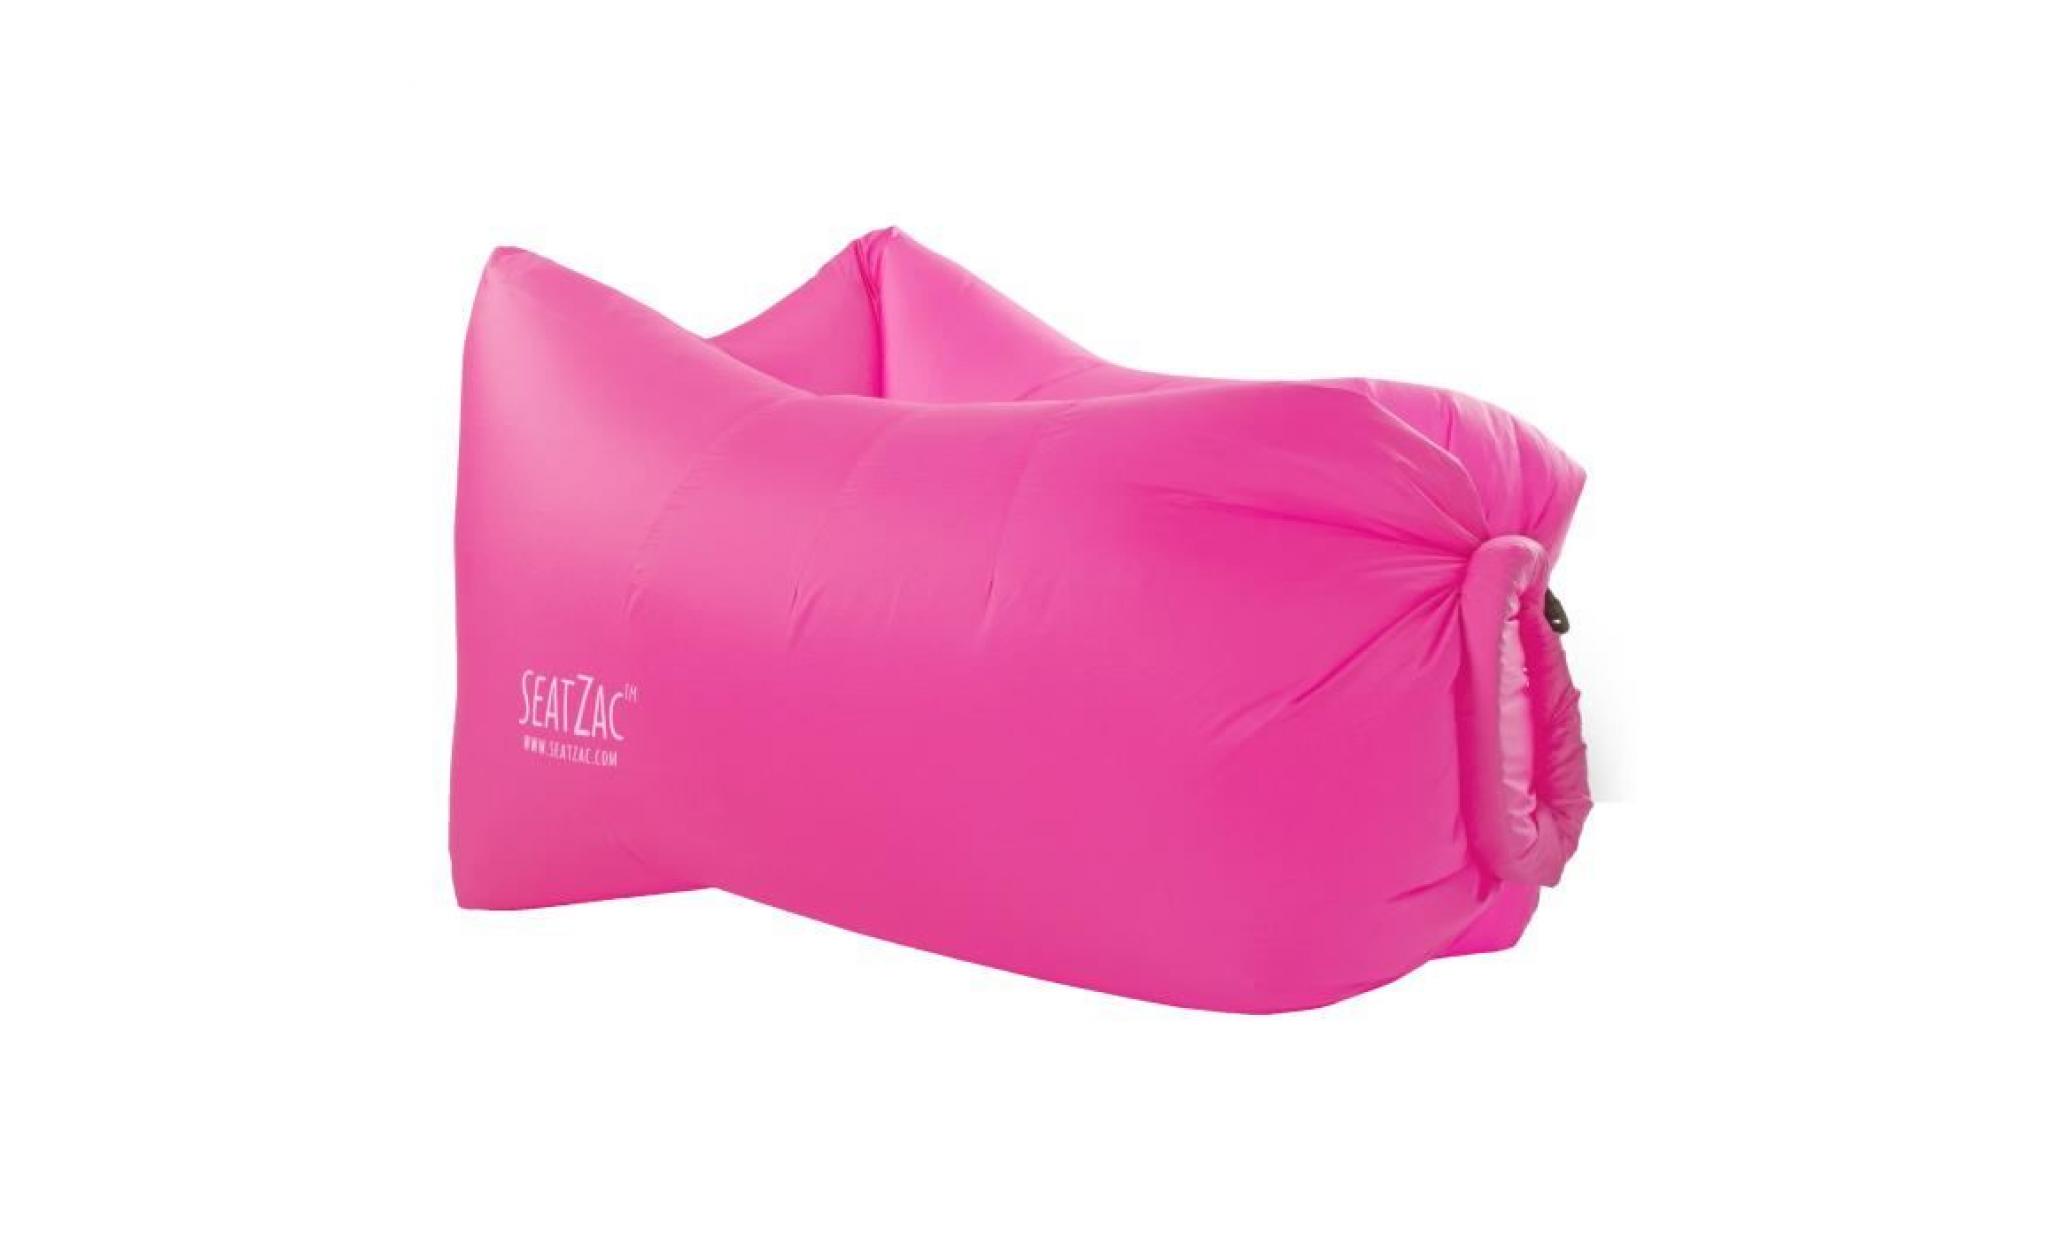 seatzac fauteuil gonflable en polyester avec light kit led   100x70x80cm   rose